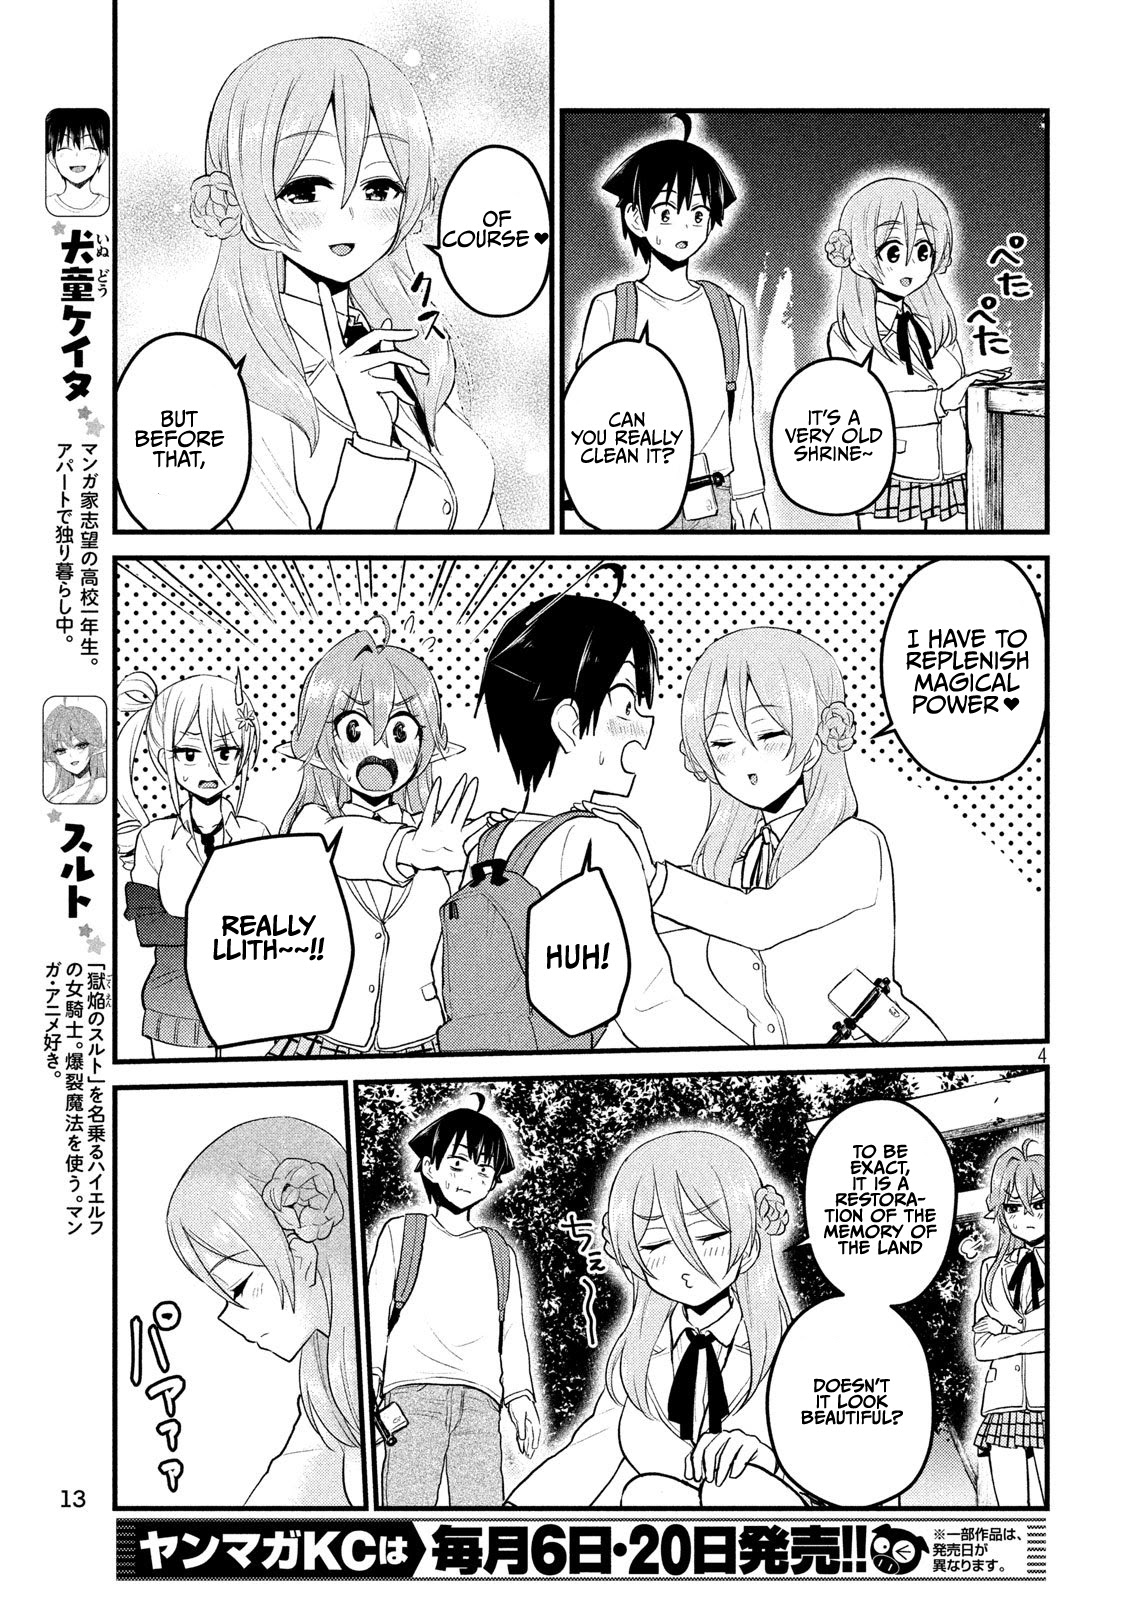 Otaku No Tonari Wa Erufu Desuka? - 12 page 4